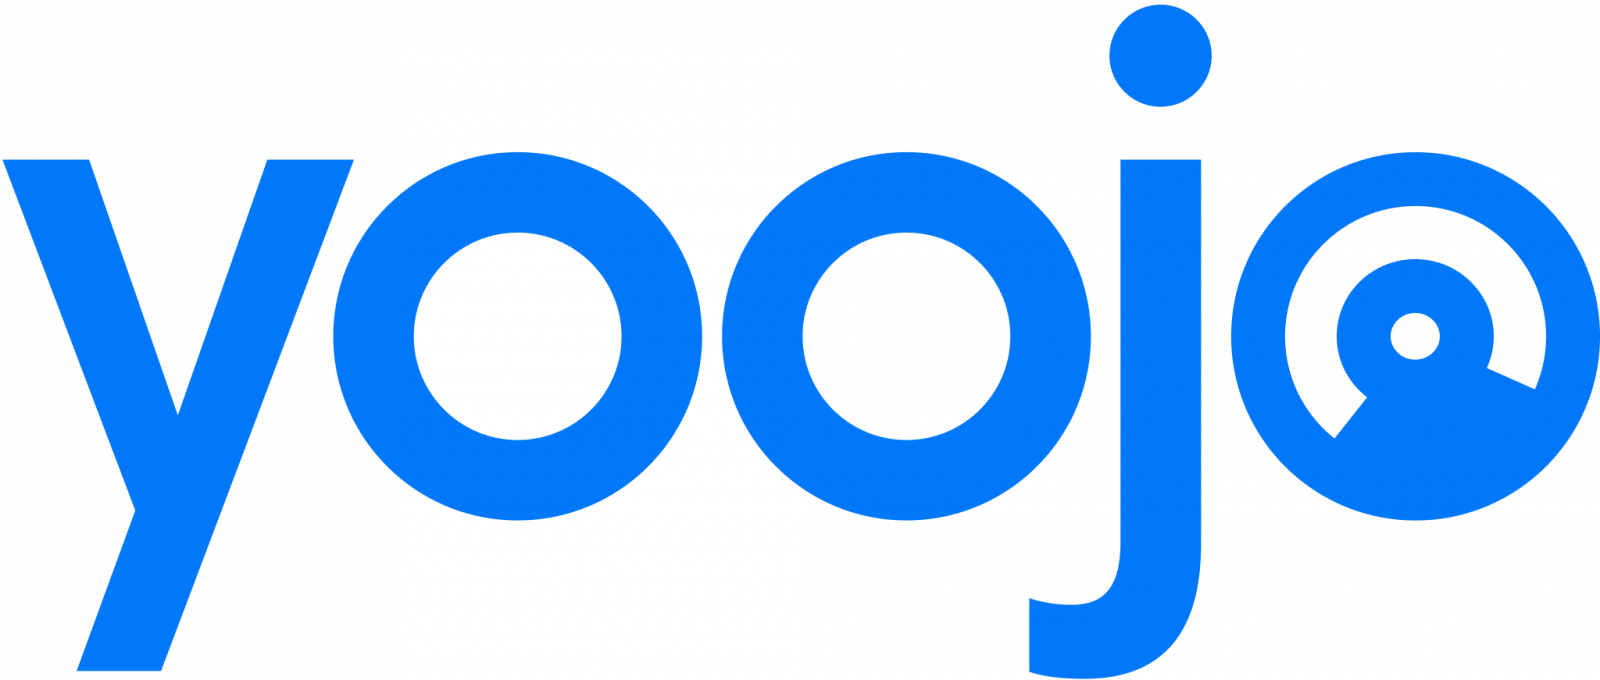 yoojo logo